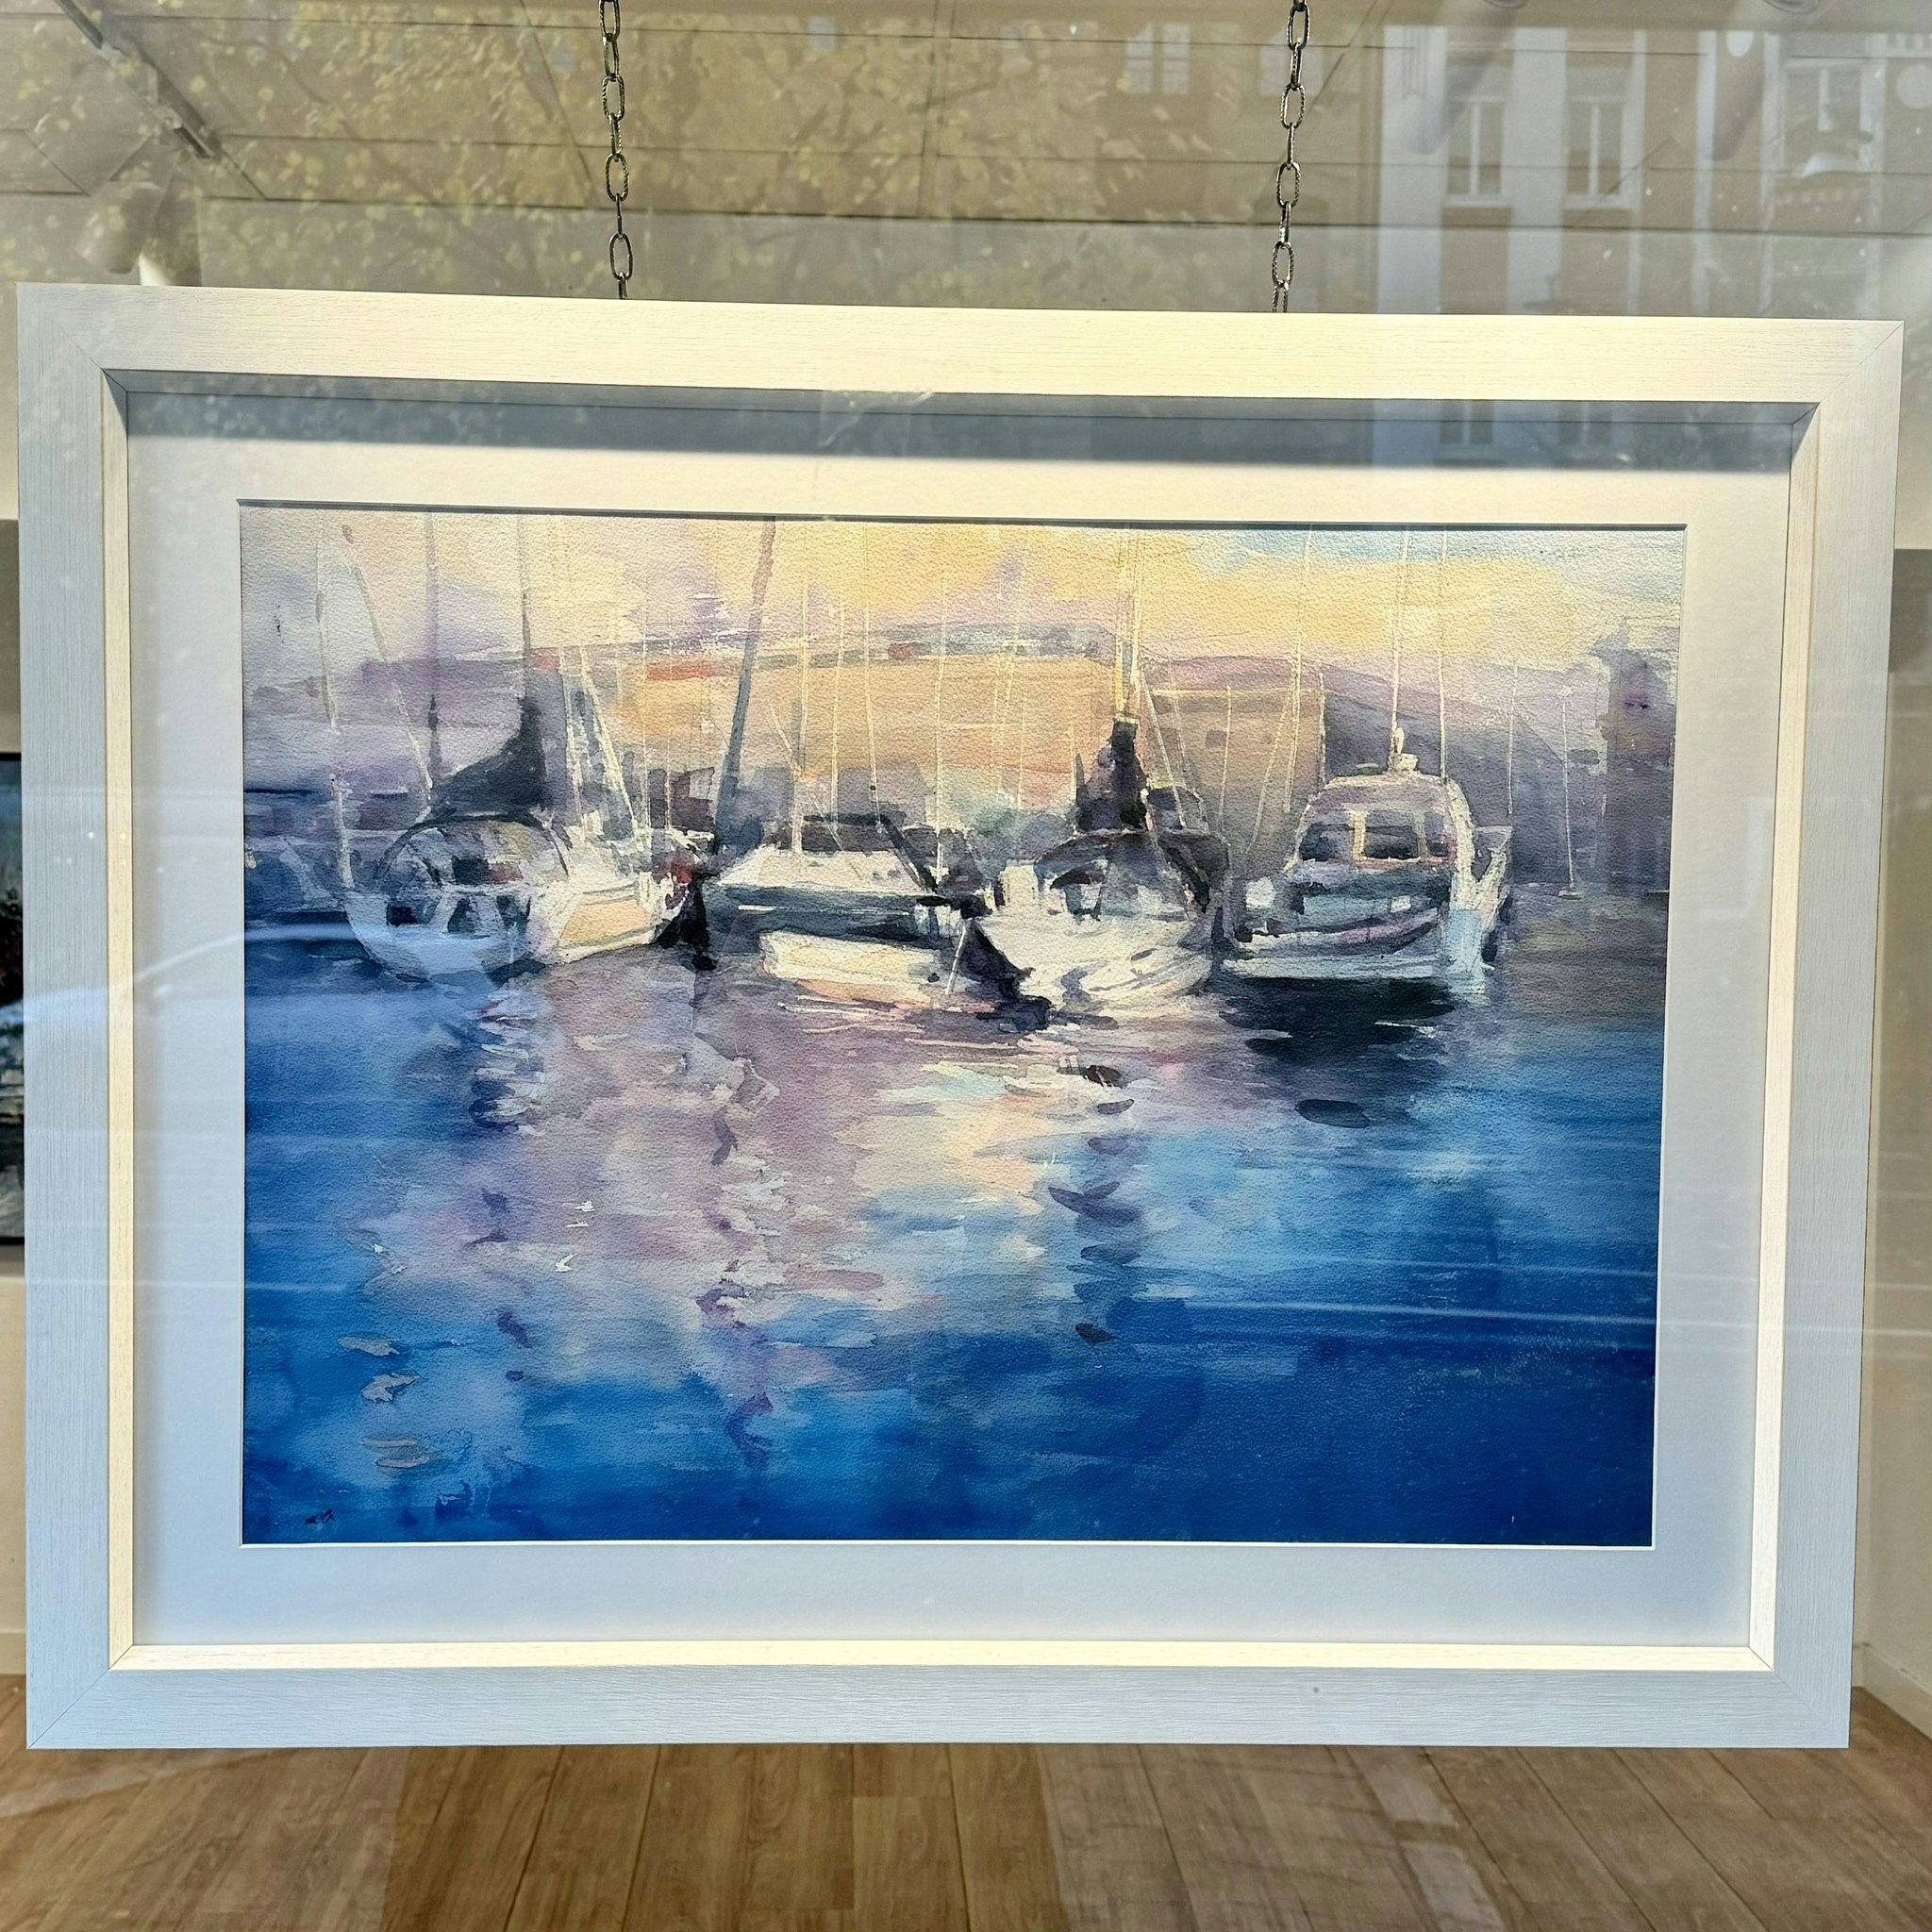 43. "Harbor" Akvarell av John Ma. 92x72 cm